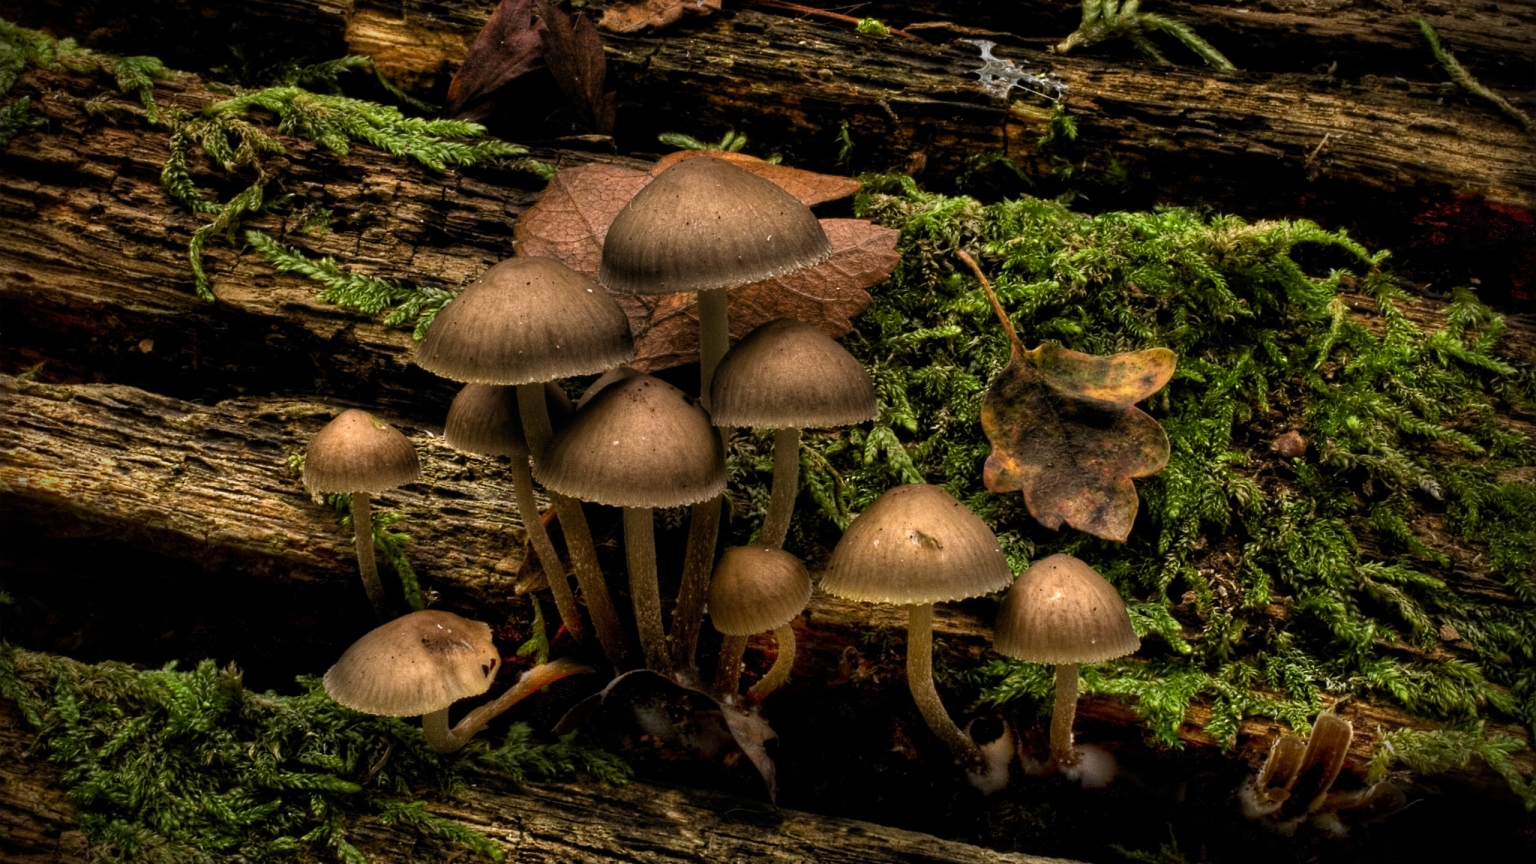 Mushrooms for 1536 x 864 HDTV resolution